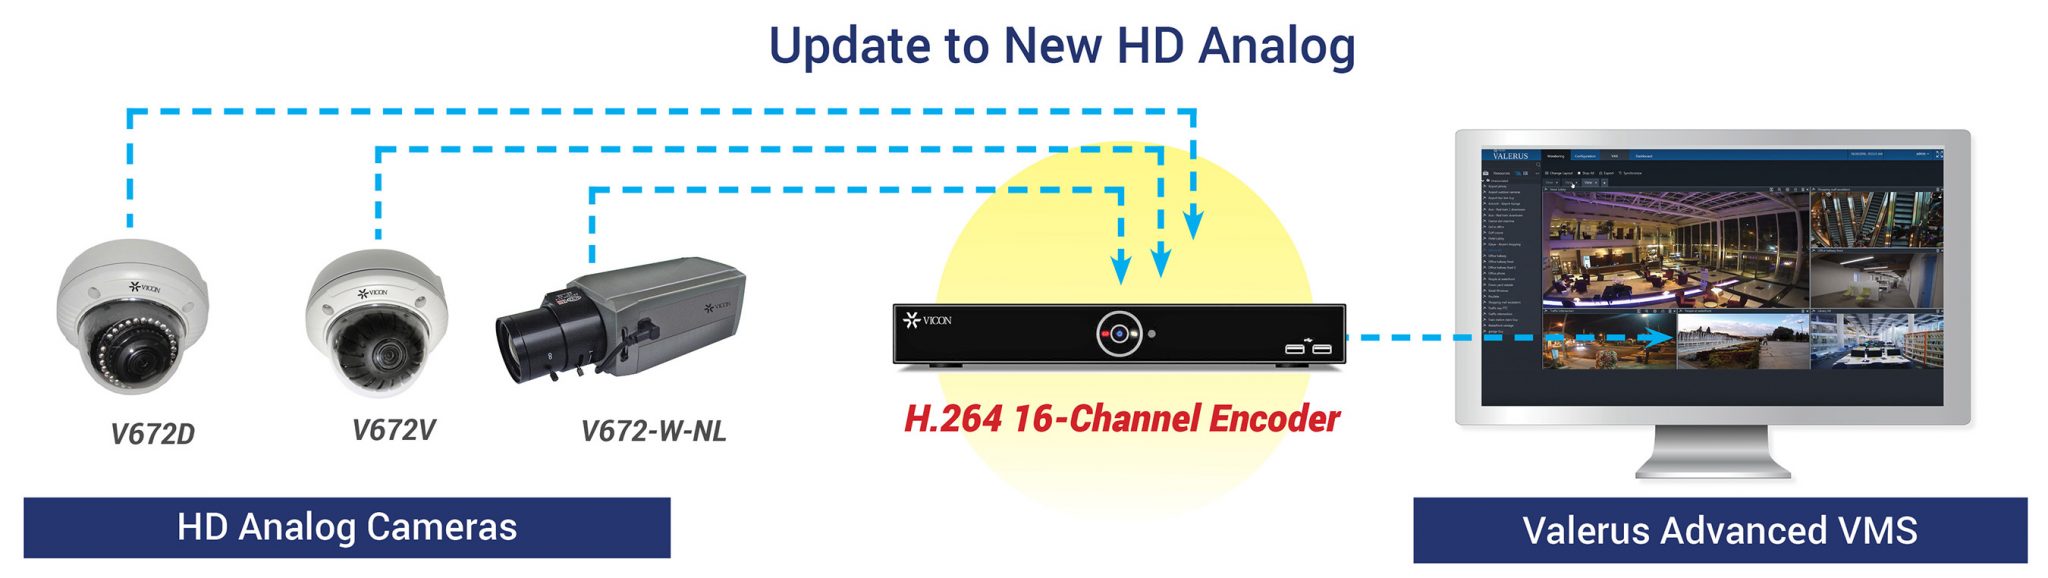 Valerus Network 16-Channel Encoder H.264